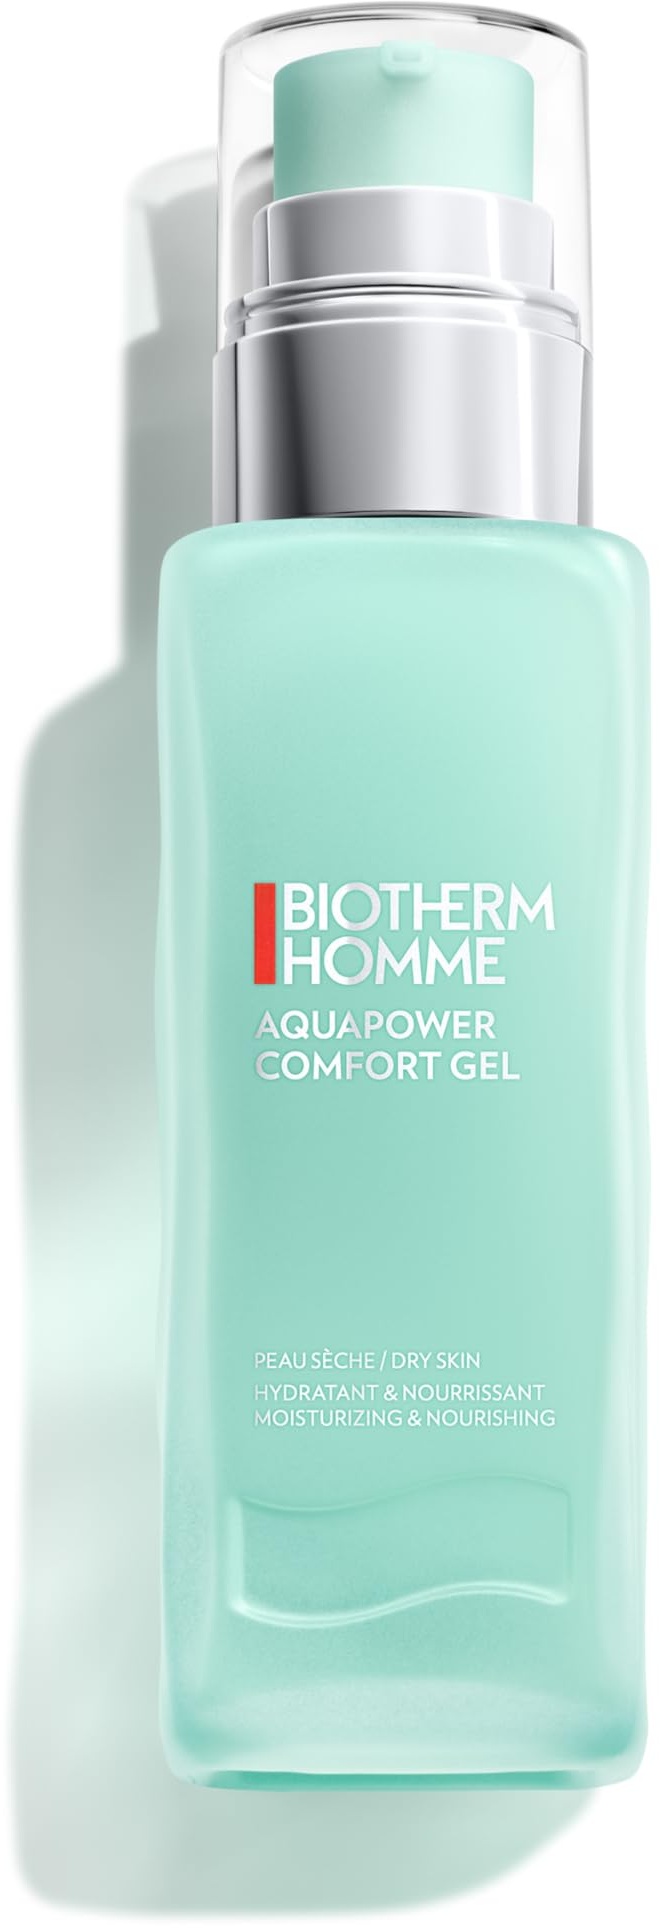 BIOTHERM Homme Aquapower Comfort Gel, mit Thermalplankton und Oligo-Mineralien, erfrischendes Gesichtsgel für Männer, für intensiv gepflegte Haut, 75 ml